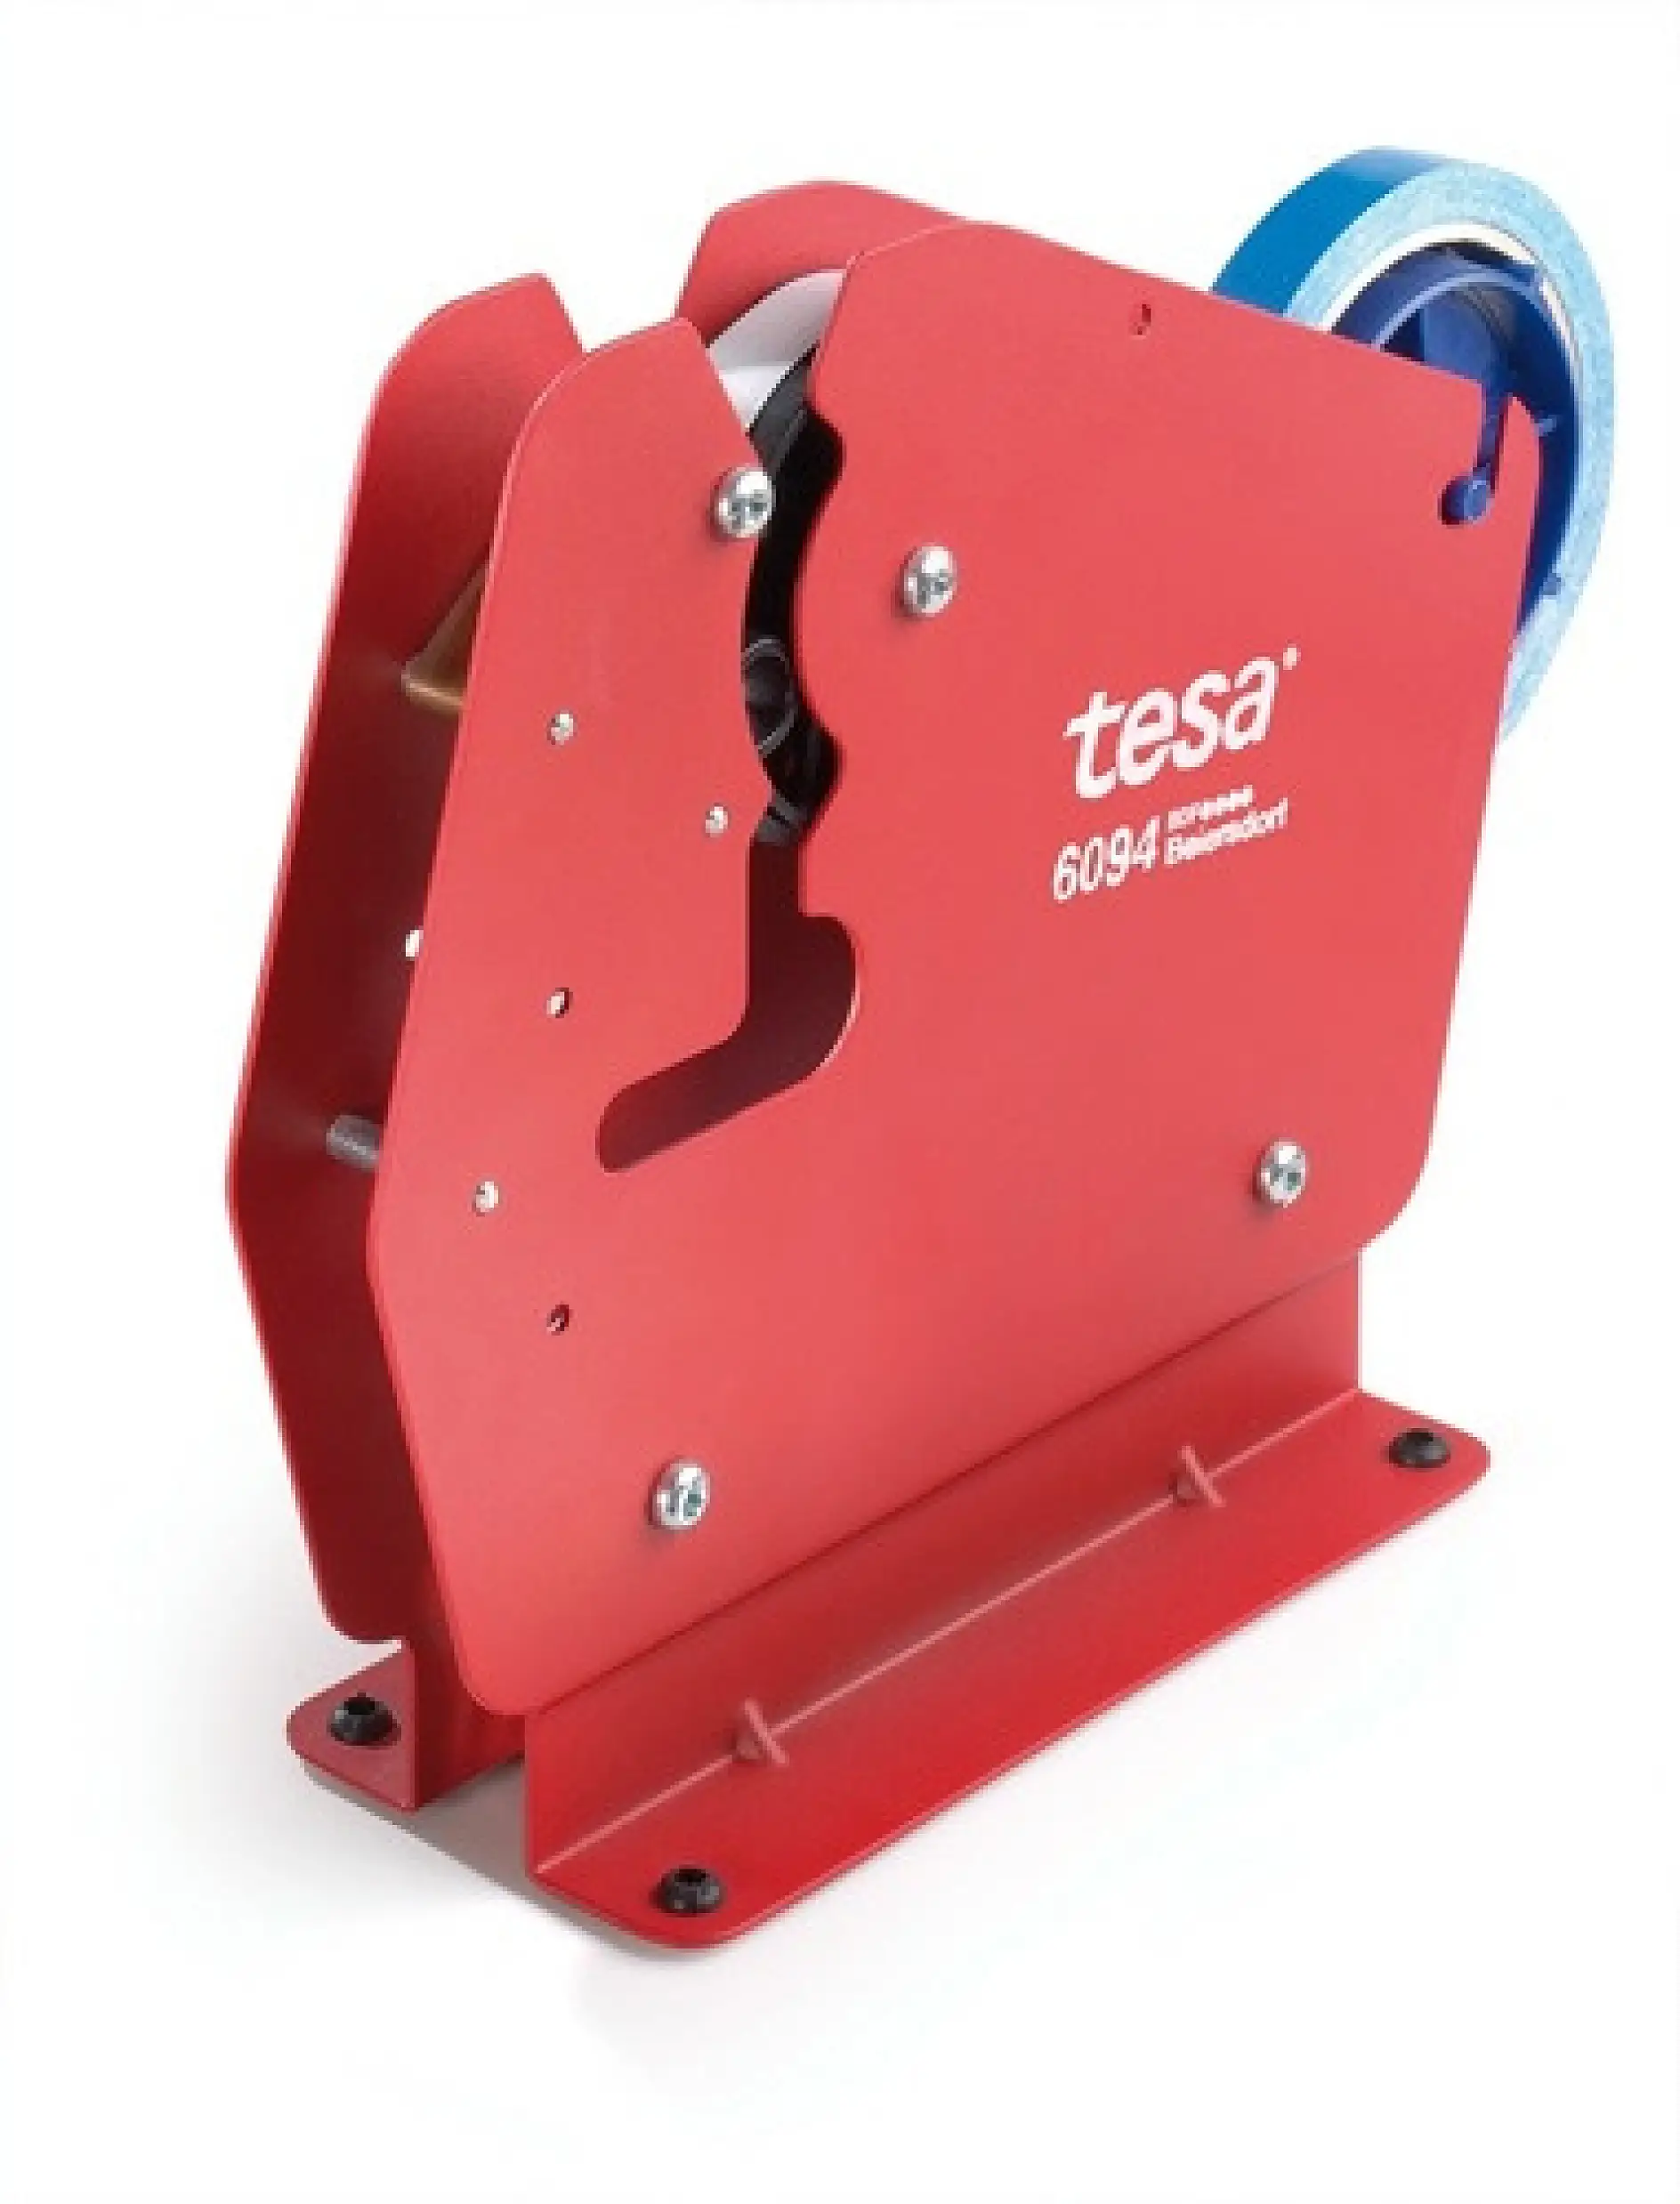 Der tesa Beutelschliesser-Abroller 4204 wurde für das effektive Verschliessen von Kunststoff- und Papierbeuteln aller Art entwickelt.